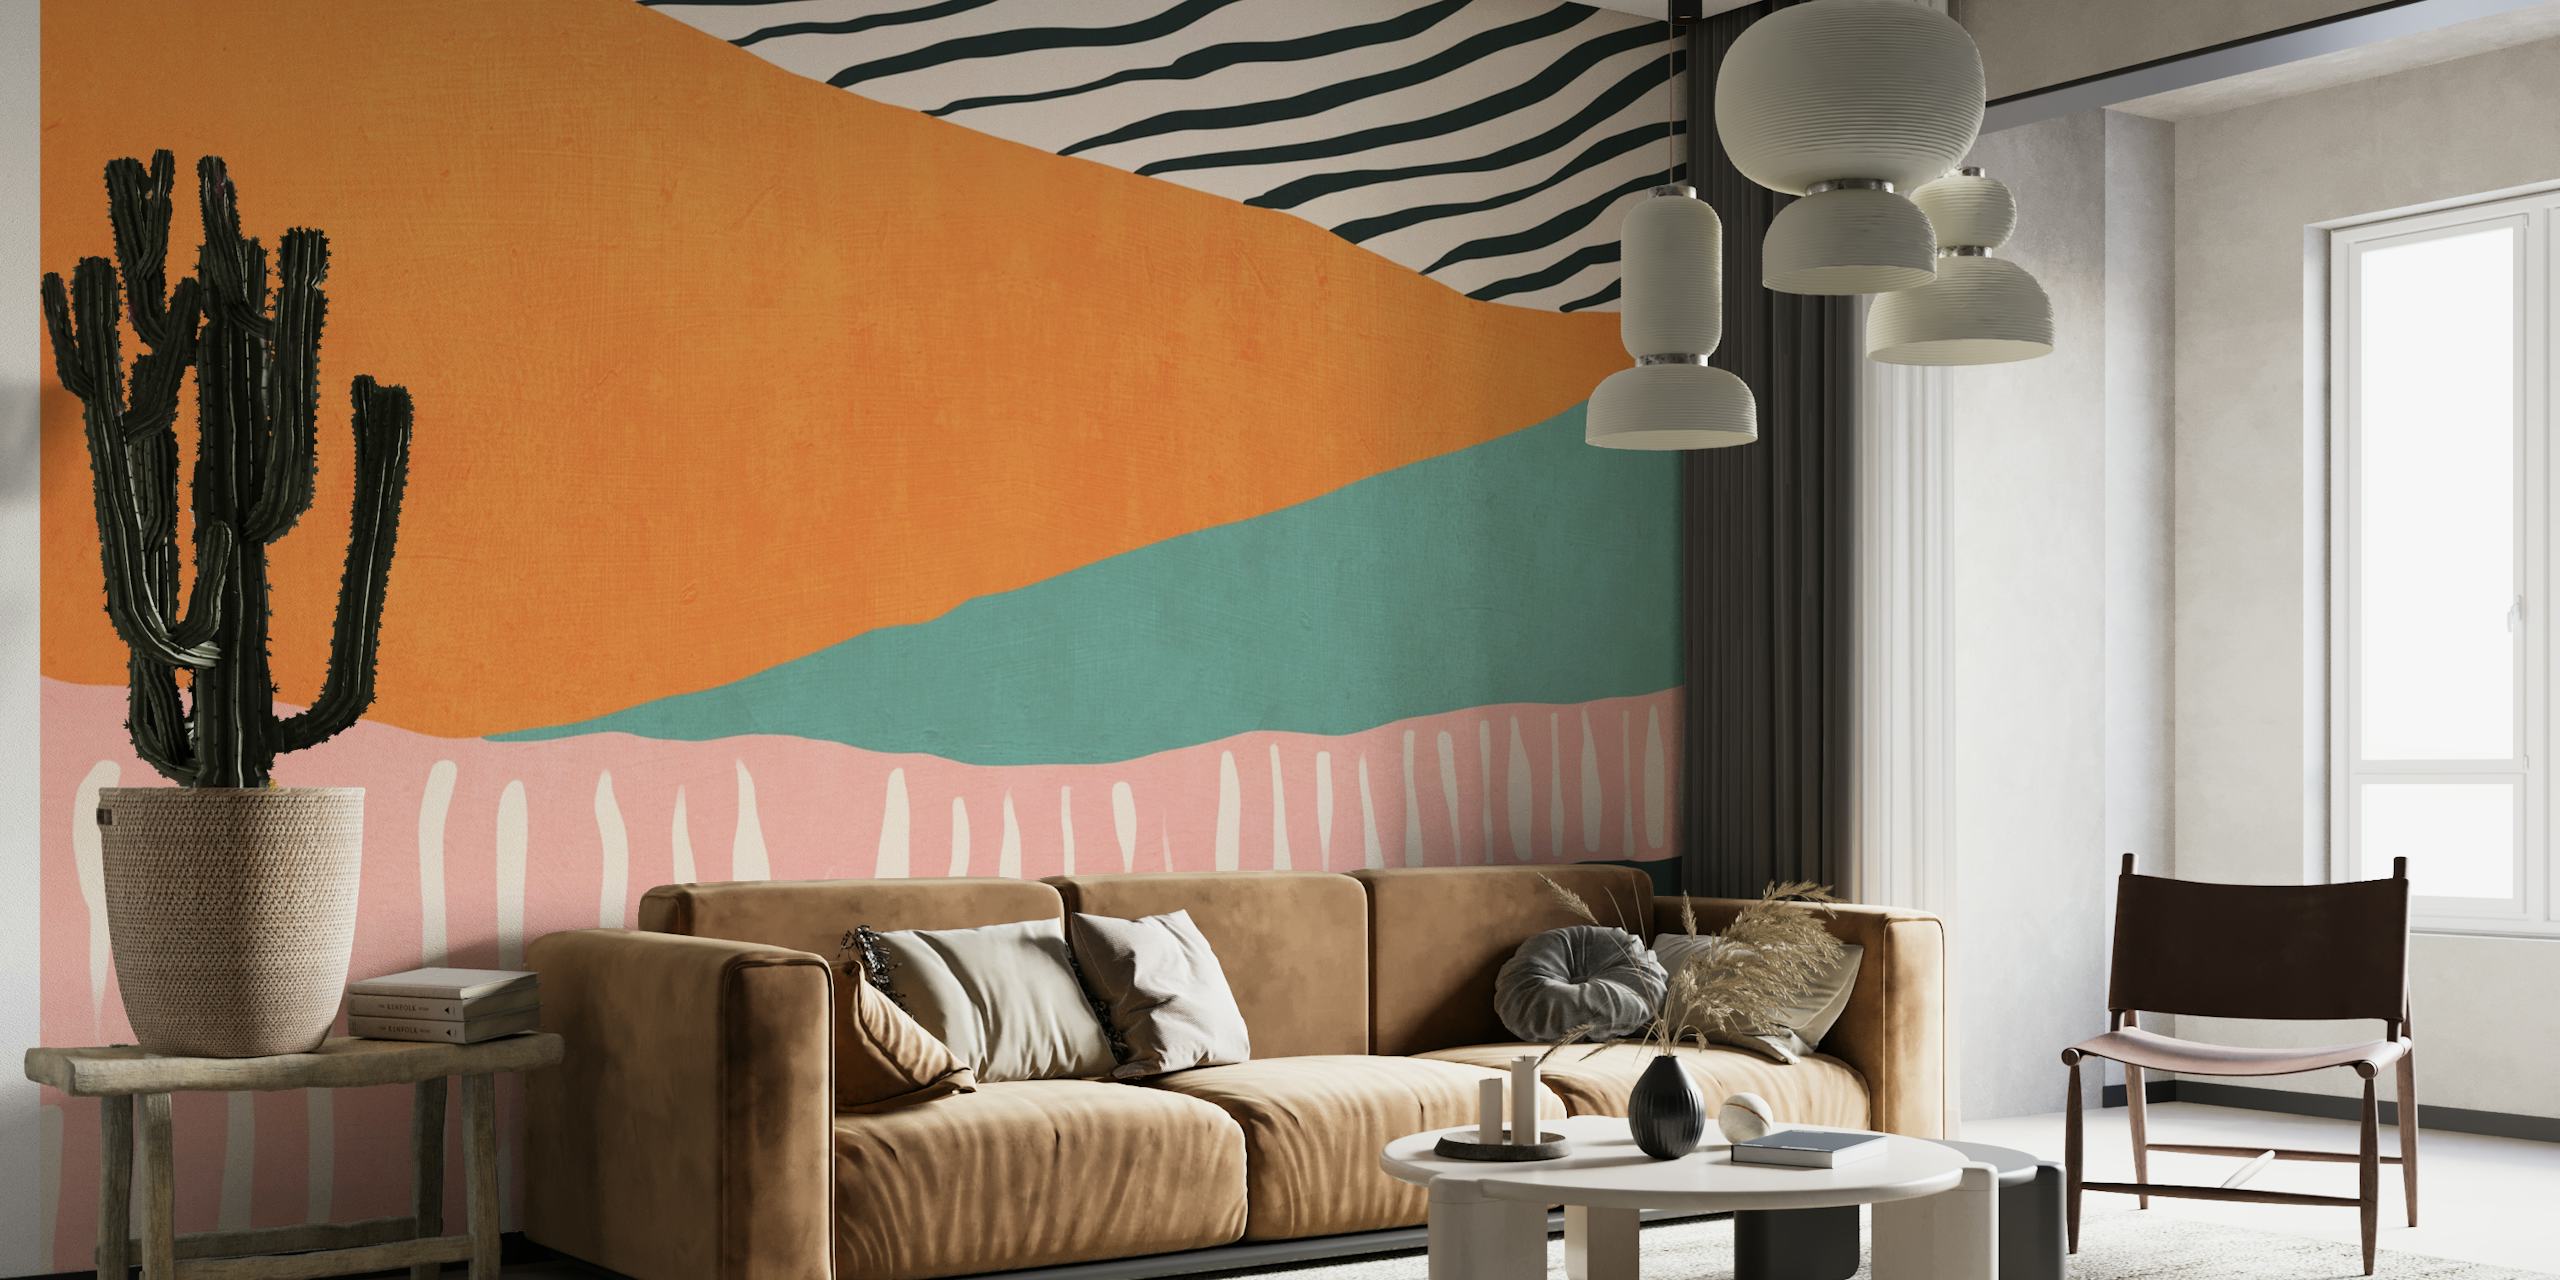 Abstrakt stribet vægmaleri med orange, turkis, pink og grønne mønstre